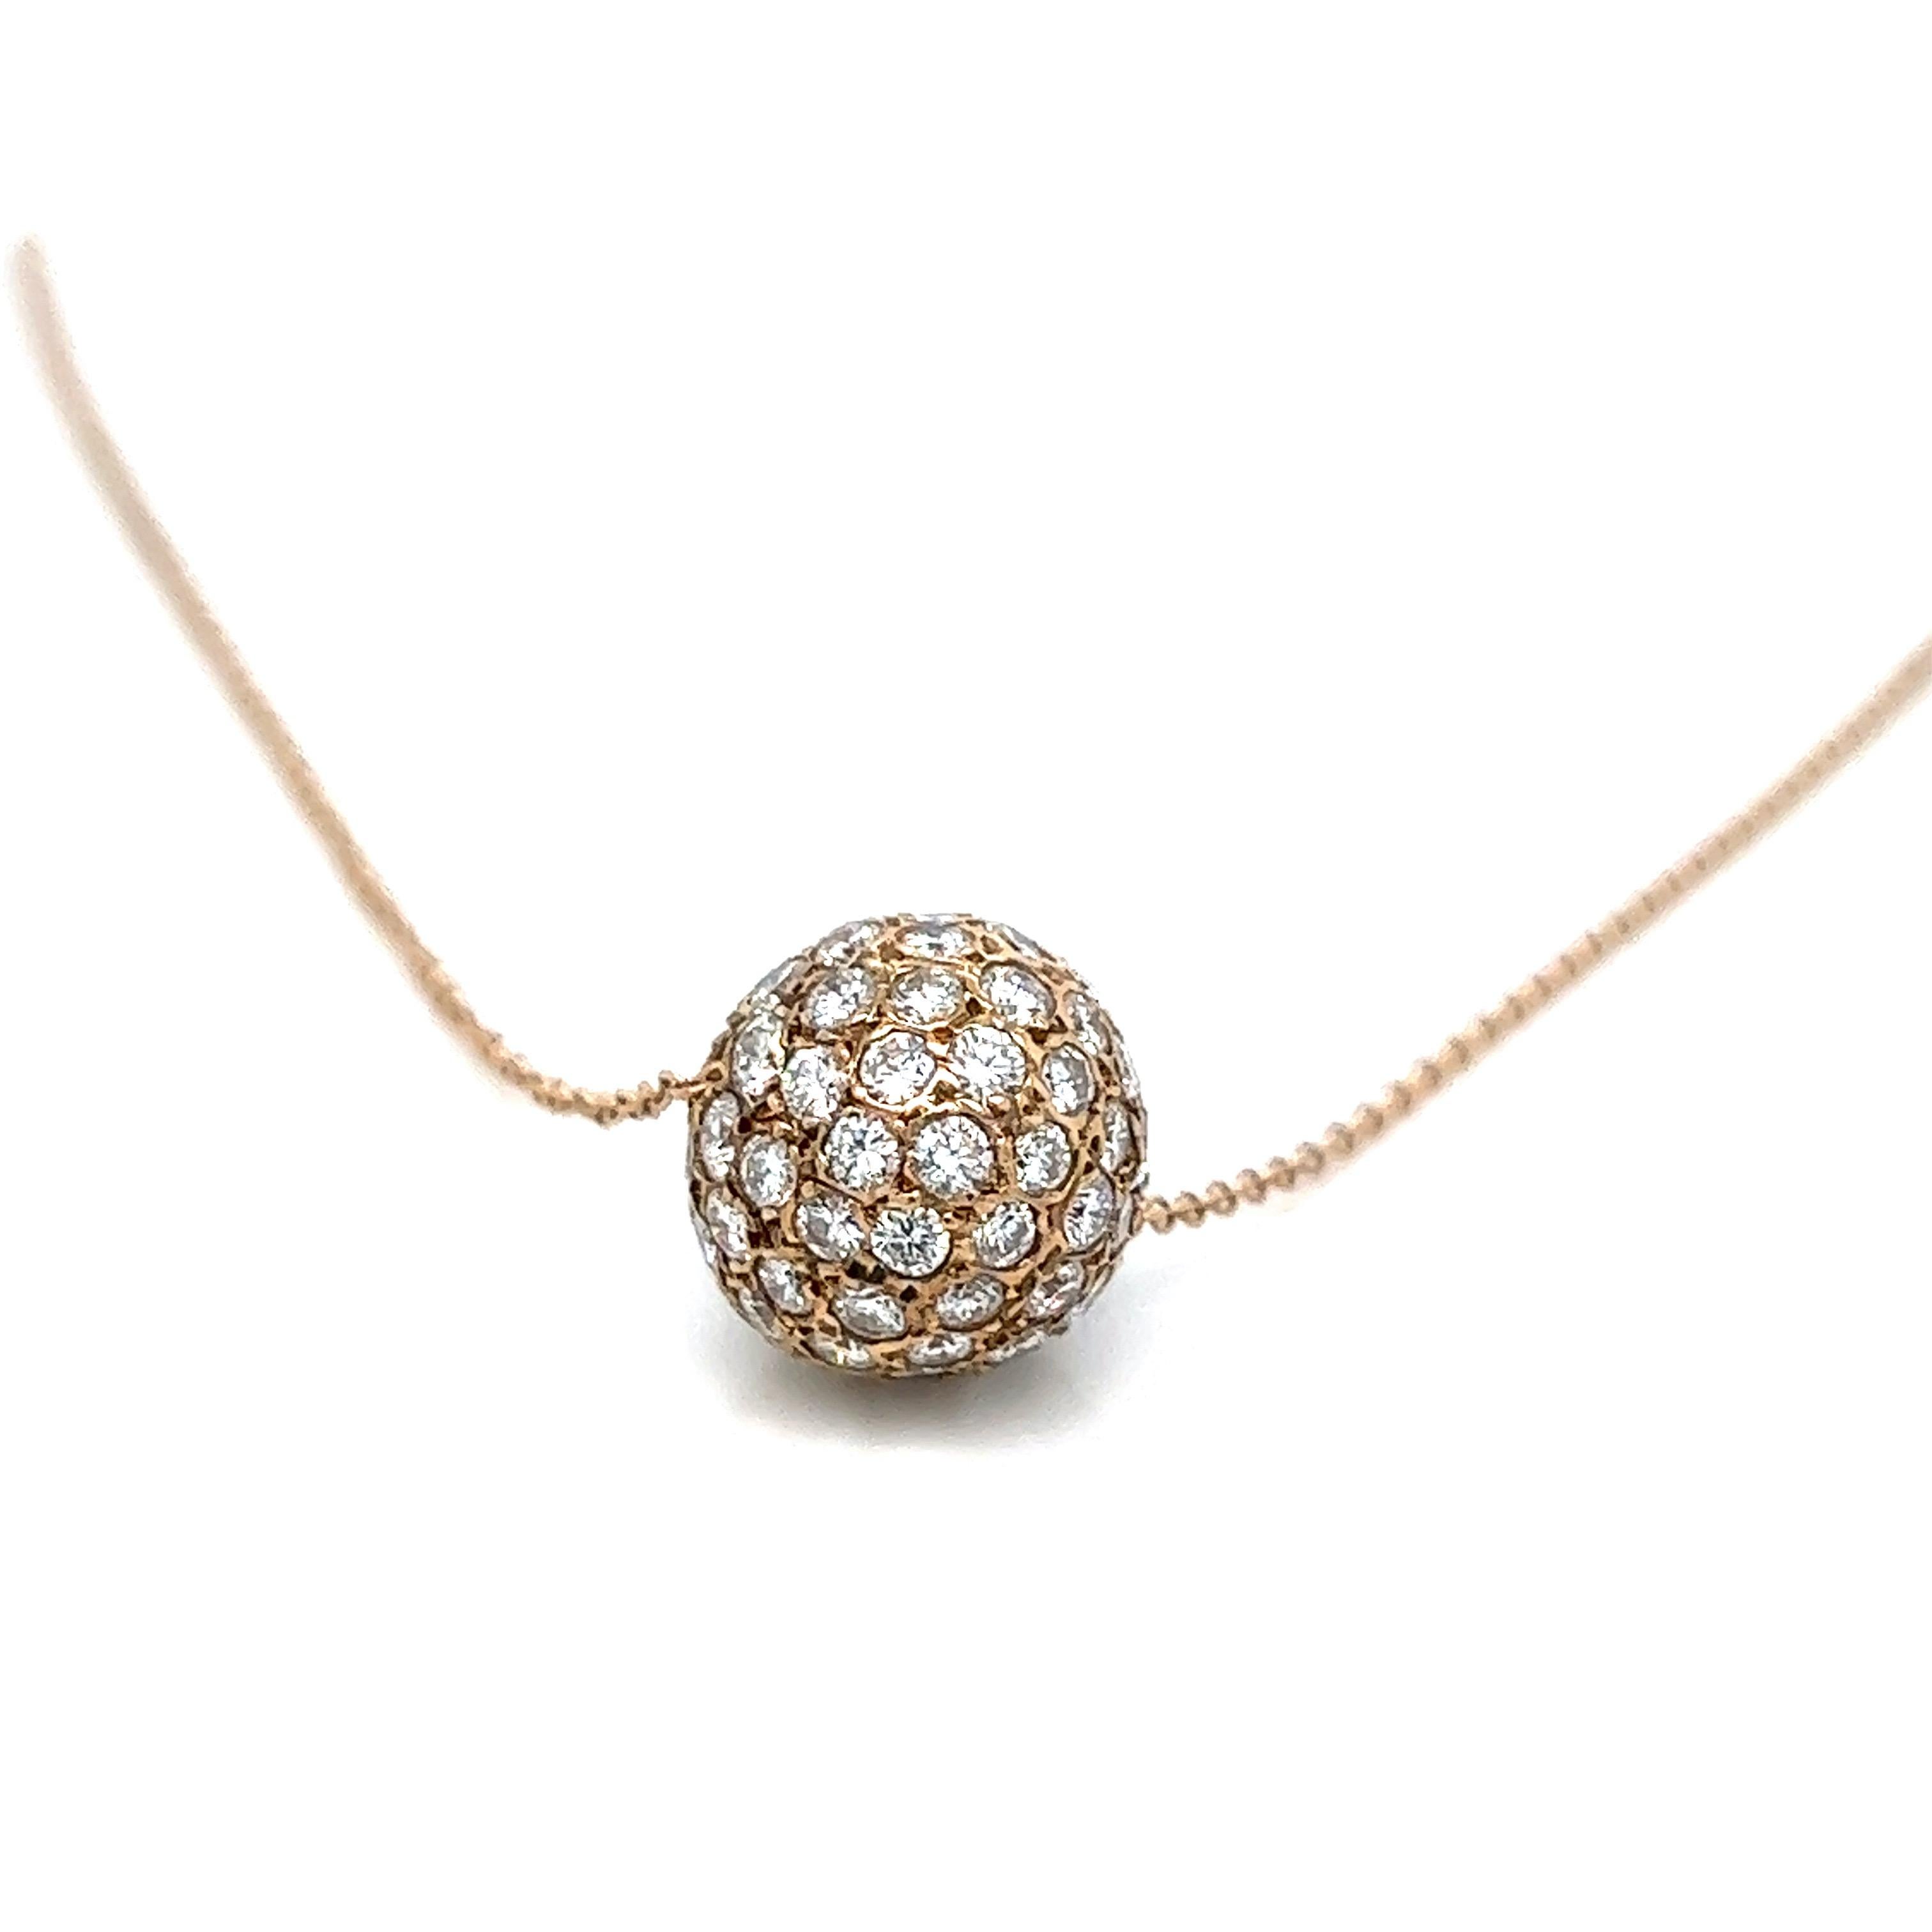 Collier à pendentif boule en diamants de Tiffany & Co. 

Diamants de taille ronde d'environ 2,5-3 carats, or jaune 18 carats ; marqué Tiffany & Co, Au750

Taille : largeur de la boule 11 mm, longueur de la chaîne 15.5 pouces
Poids total : 4,7 grammes